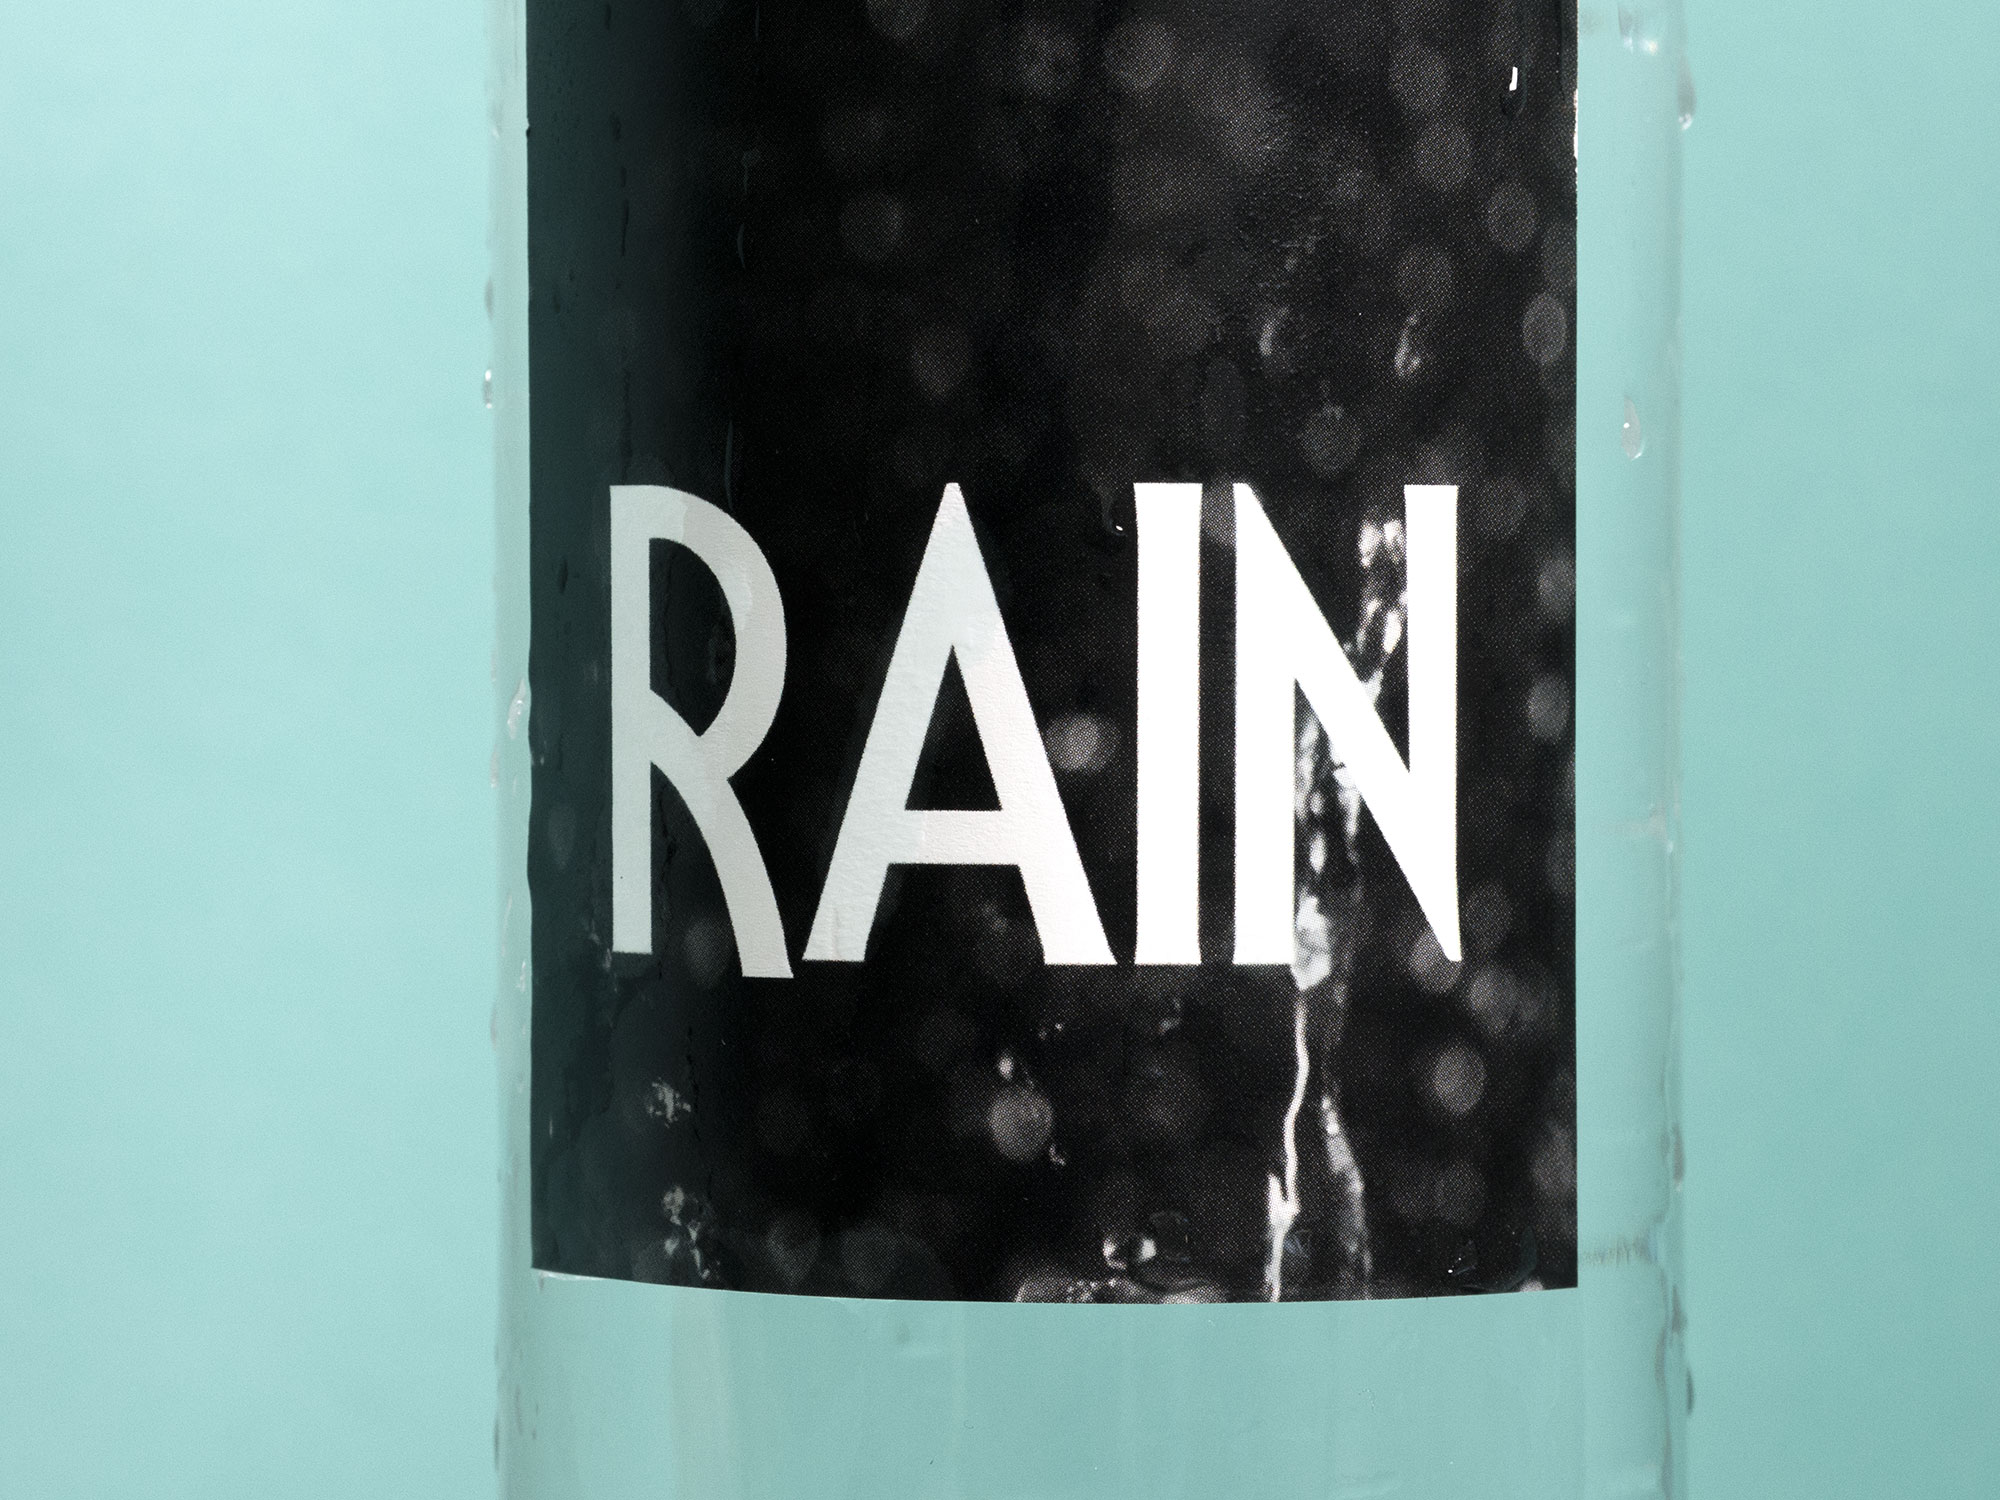 Rain Logo Design